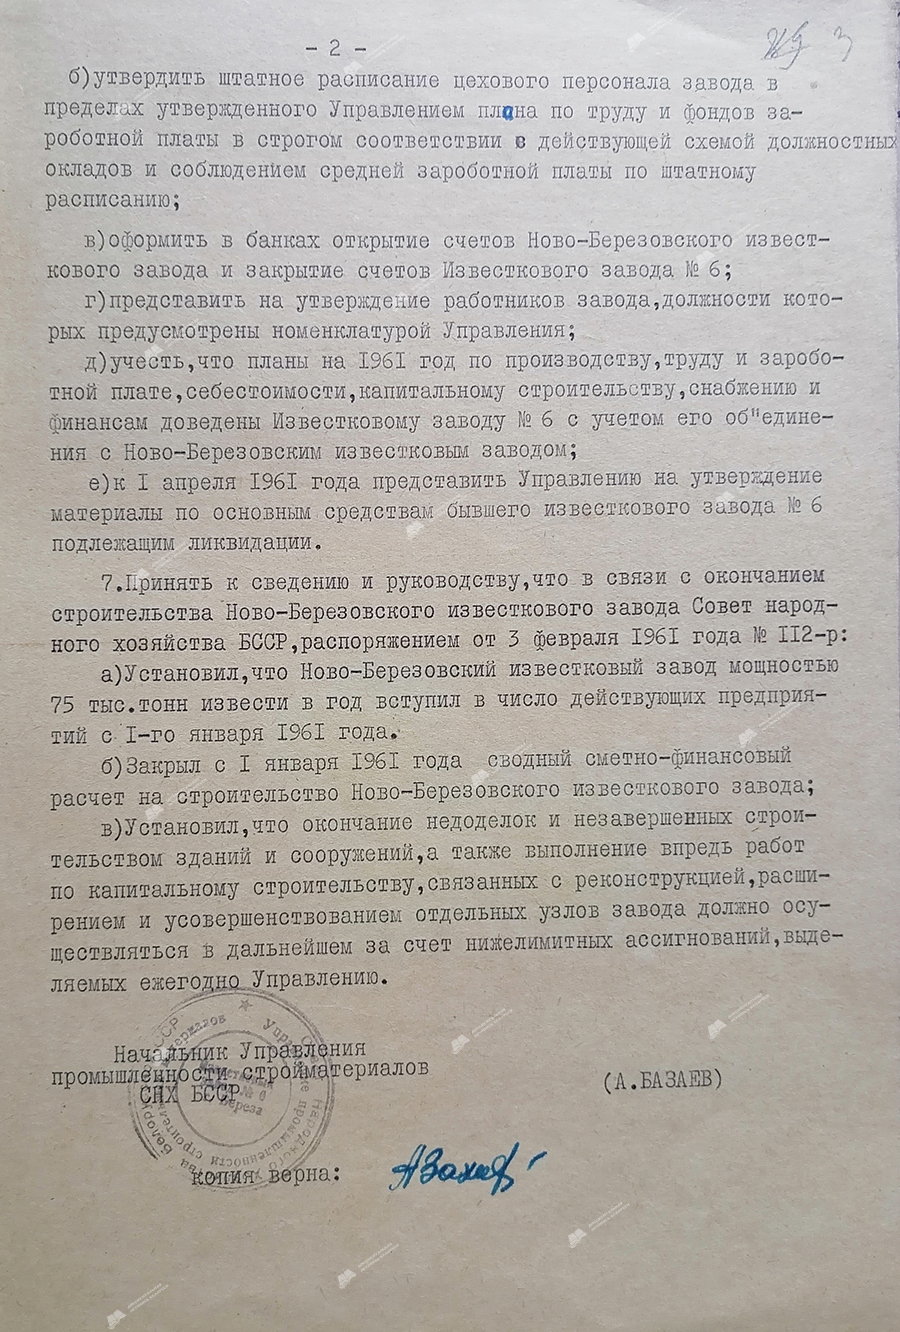 Verordnung Nr. 12 der Abteilung für Baustoffindustrie des Rates für Volkswirtschaft der BSSR über den Zusammenschluss von Kalkfabriken und die Zuweisung des Namens «Novo-Berezovsky Kalkwerk»-стр. 1